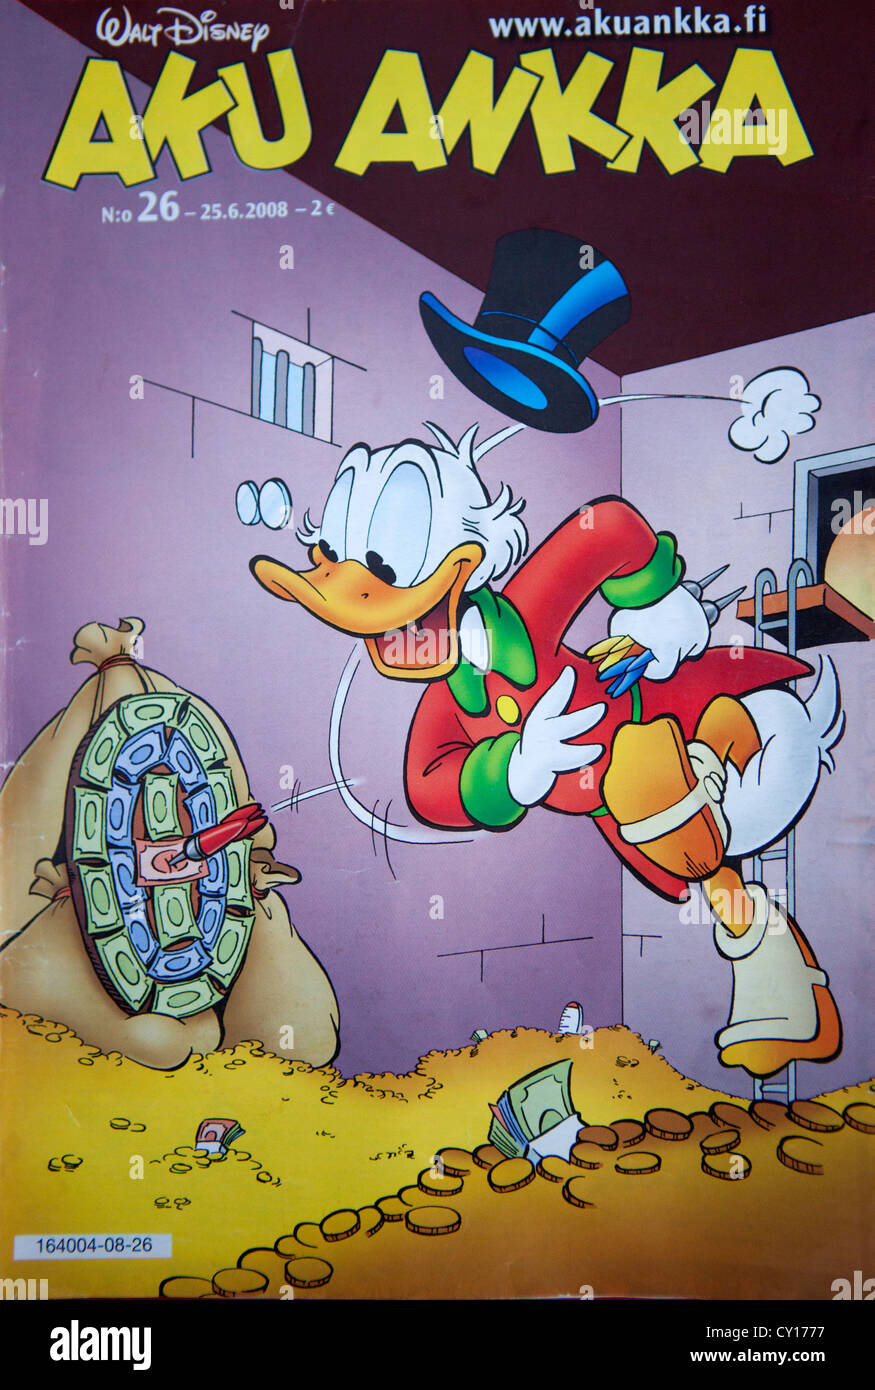 Aku ankka (Donald Duck en finnois) Banque D'Images